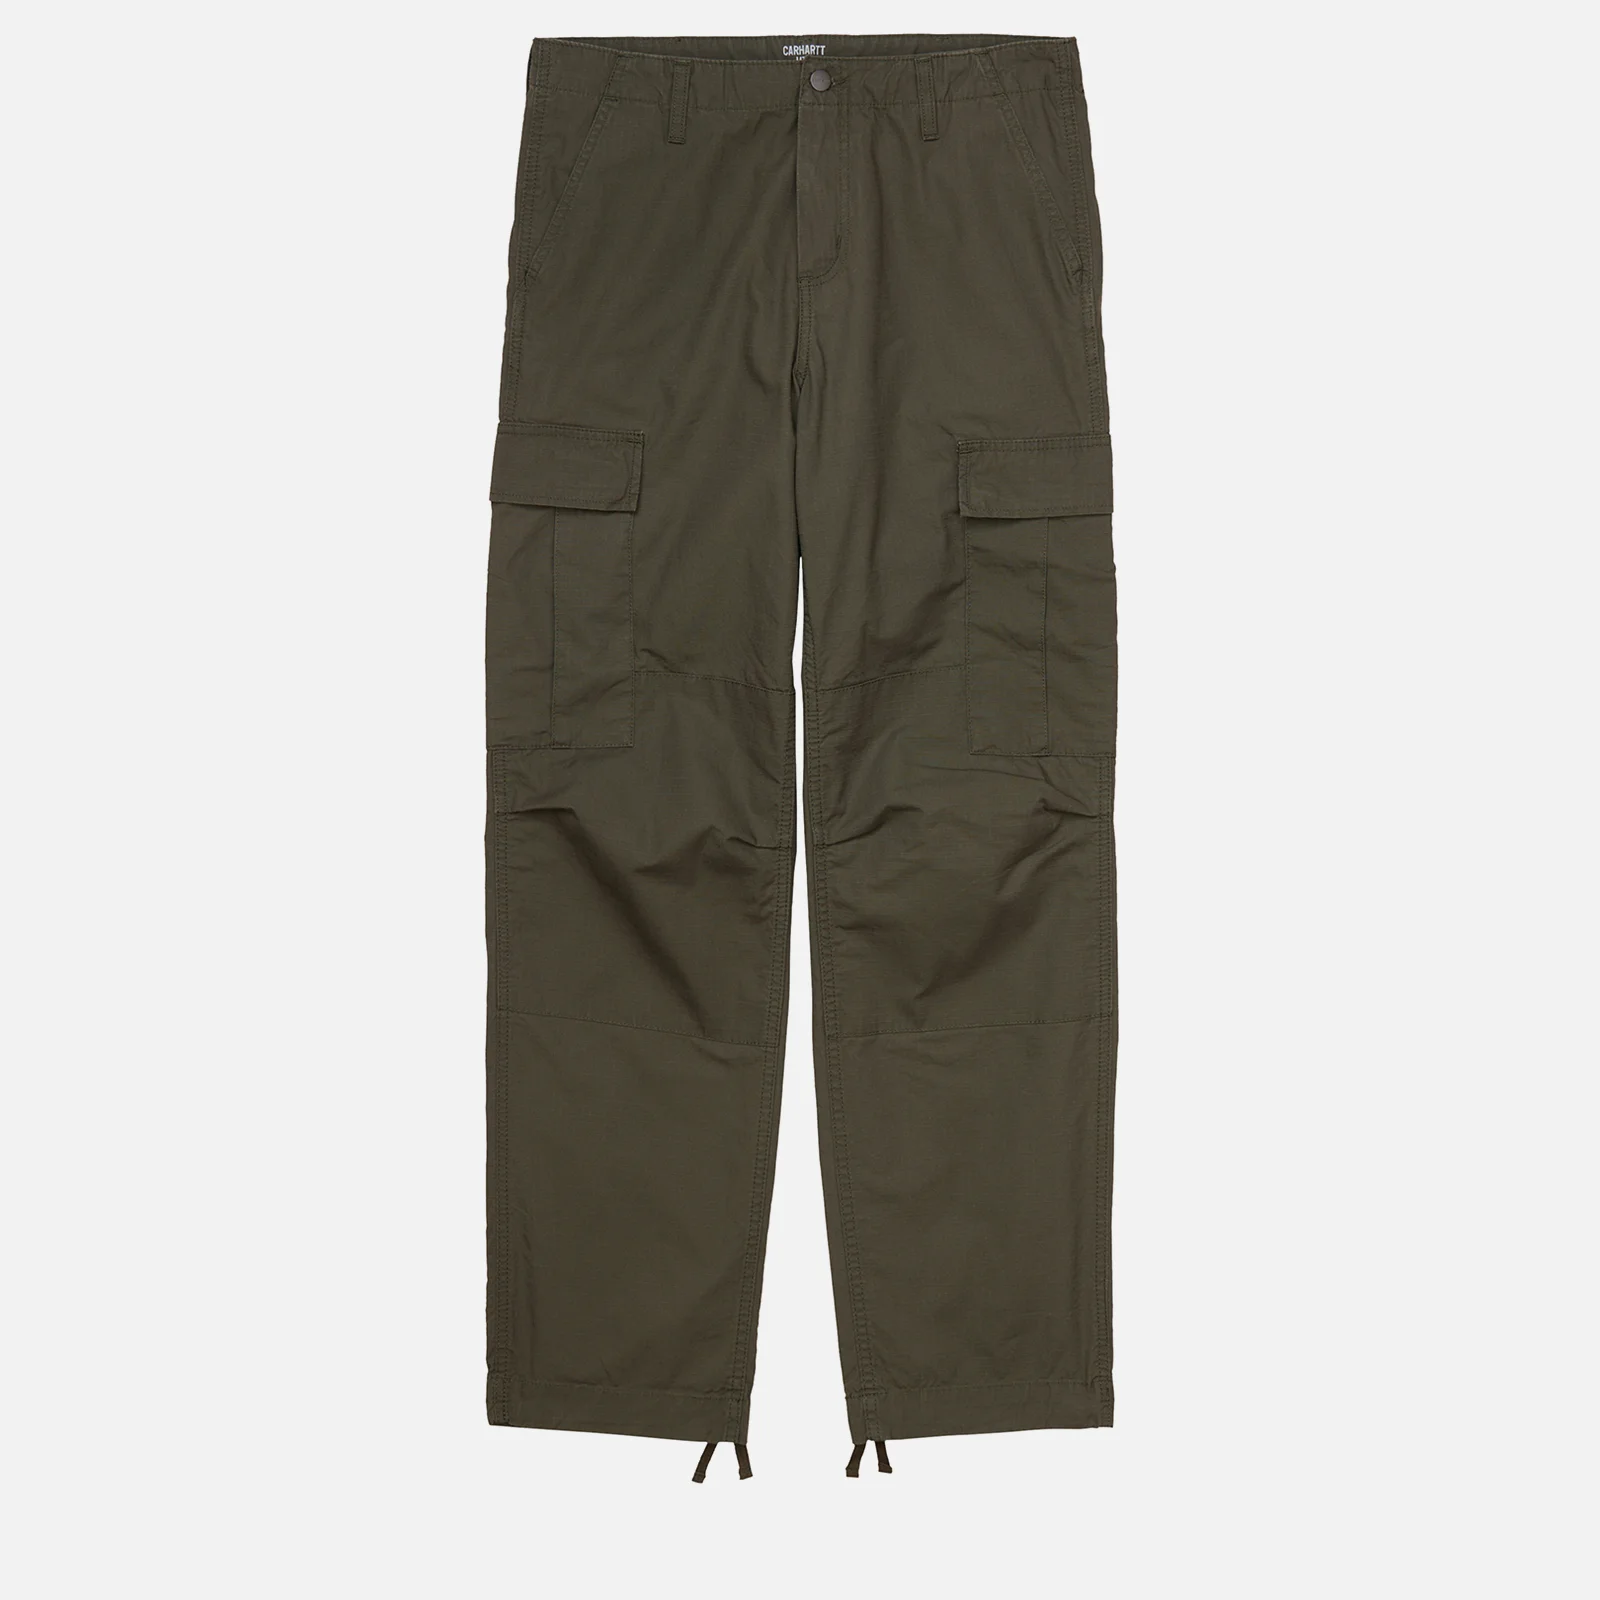 Carhartt WIP Men's Regular Cargo Pants - Cypress Image 1